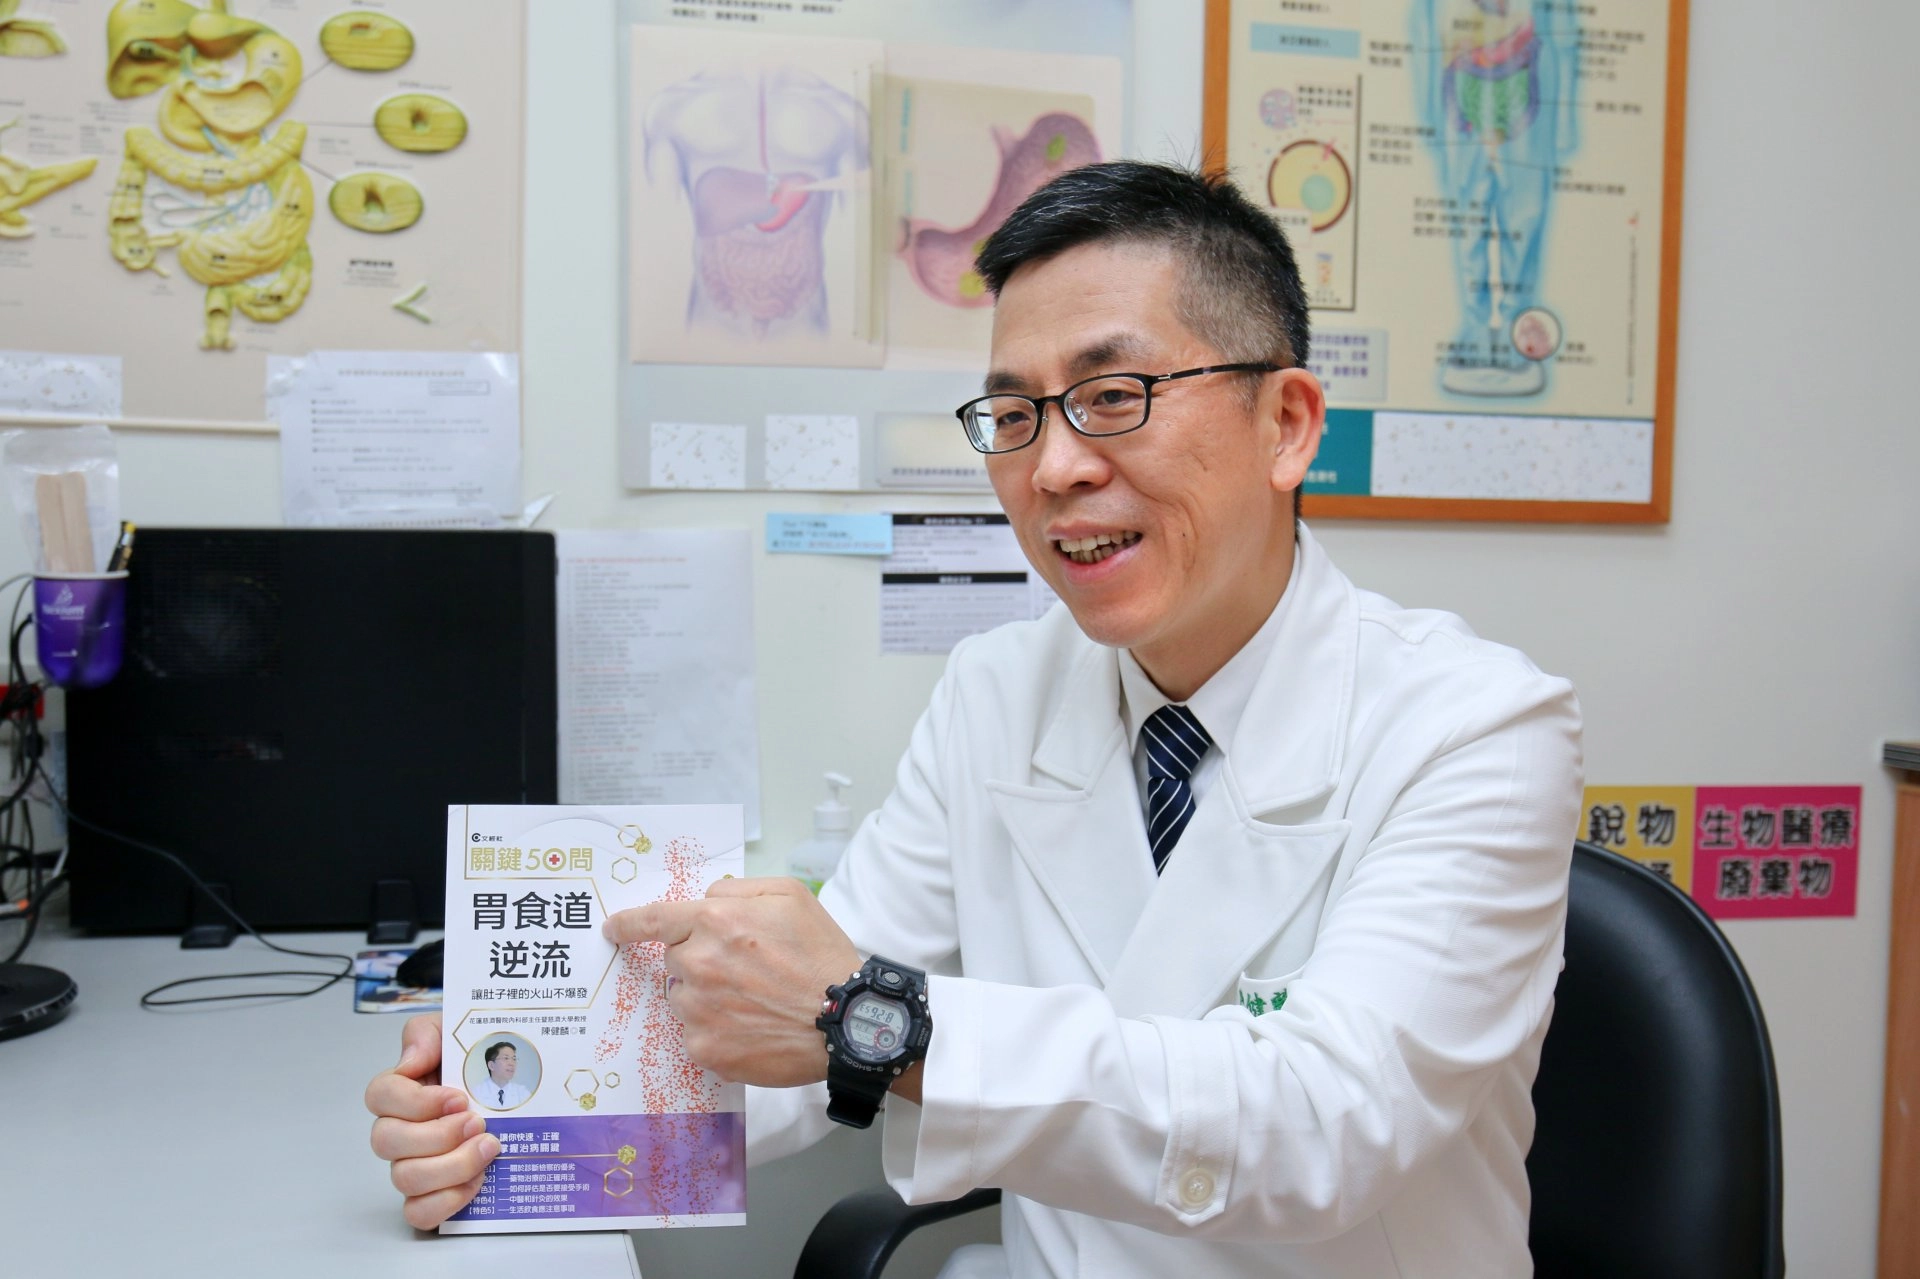 花蓮慈濟醫院肝膽腸胃科主任陳健麟教授致力於胃食道逆流症研究，住書之外，帶領團隊醫師與AI中心成功開發胃食道逆流症精準診斷模型。